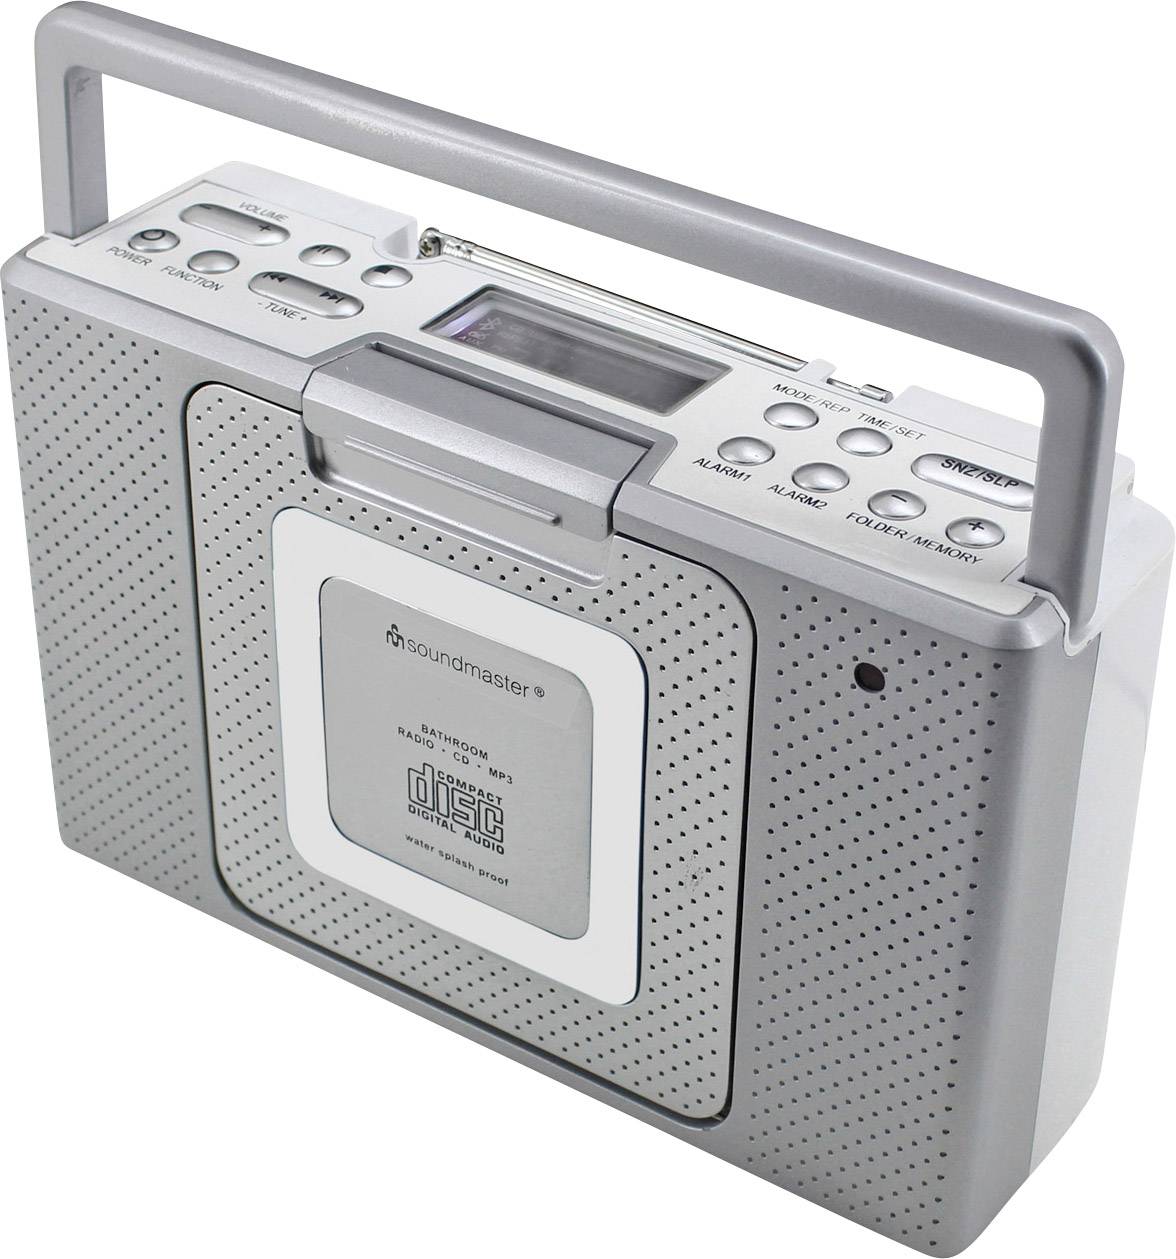 SOUNDMASTER BCD480 UKW CD-Radio AUX, CD, UKW spritzwassergeschützt Silber